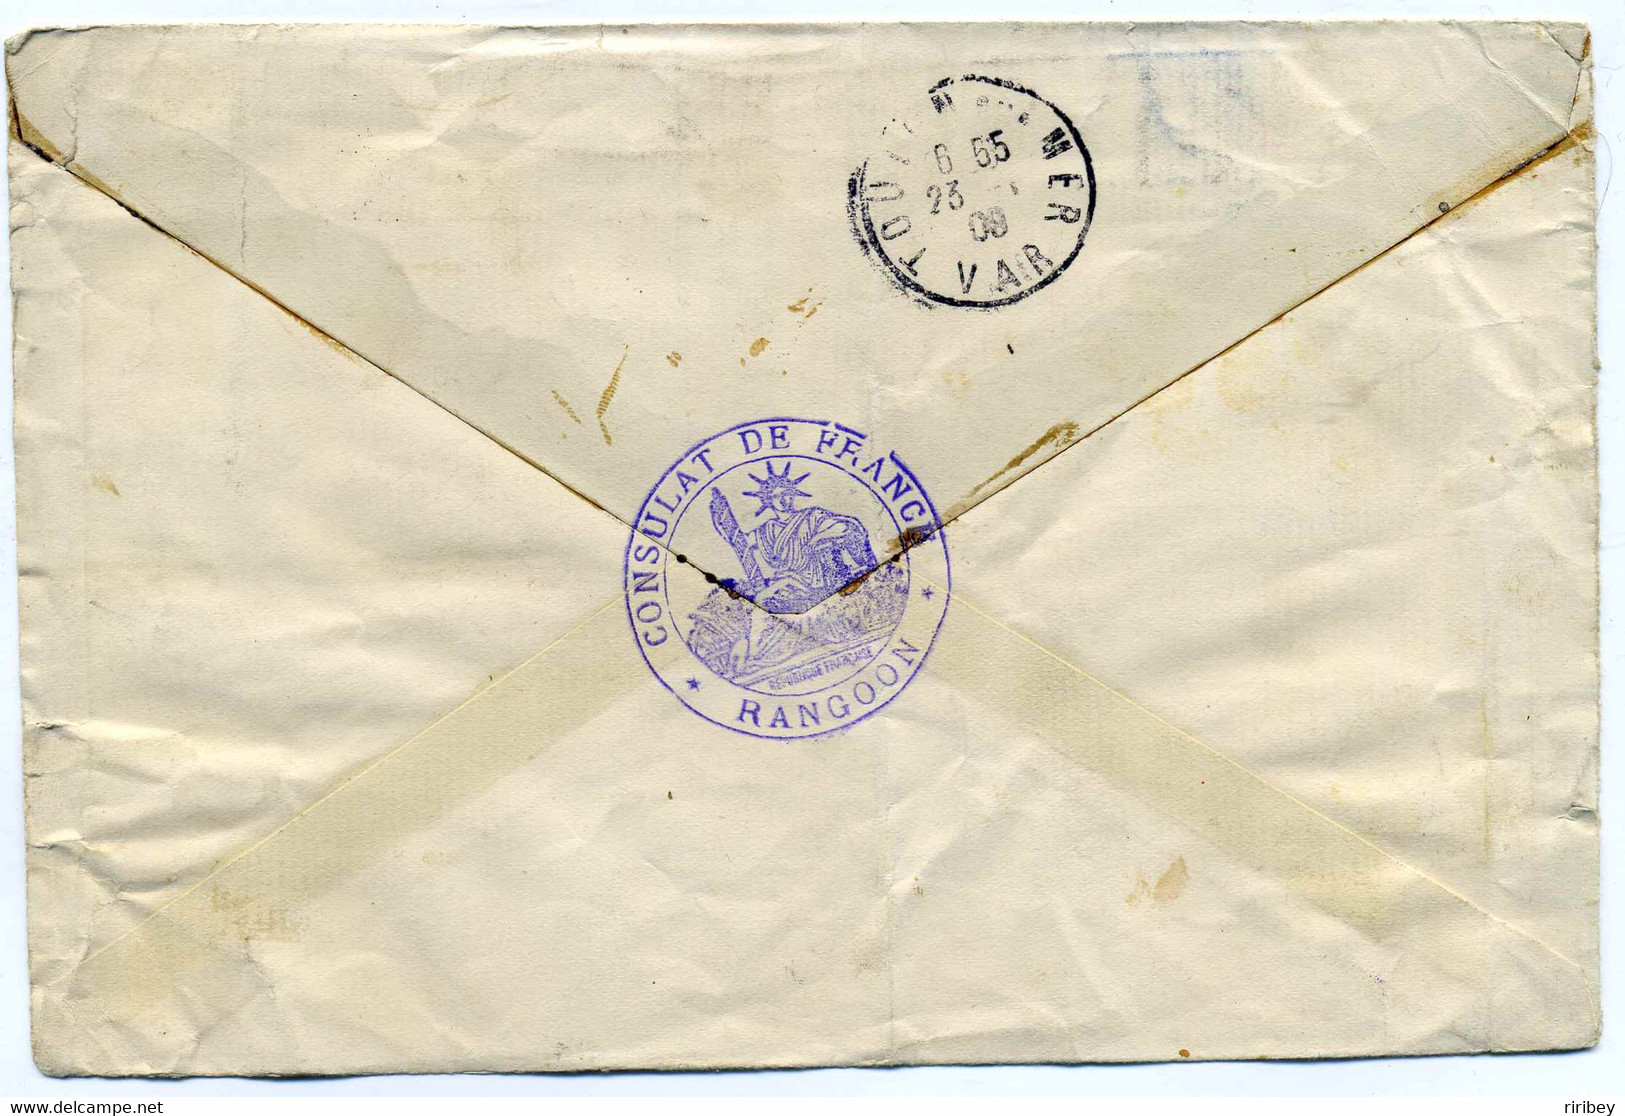 Consulat De France En Birmanie / TP Indes Anglaise YT N°58 Et 59 Oblitération RANGOON 1908 / Pour Toulon - Autres - Asie